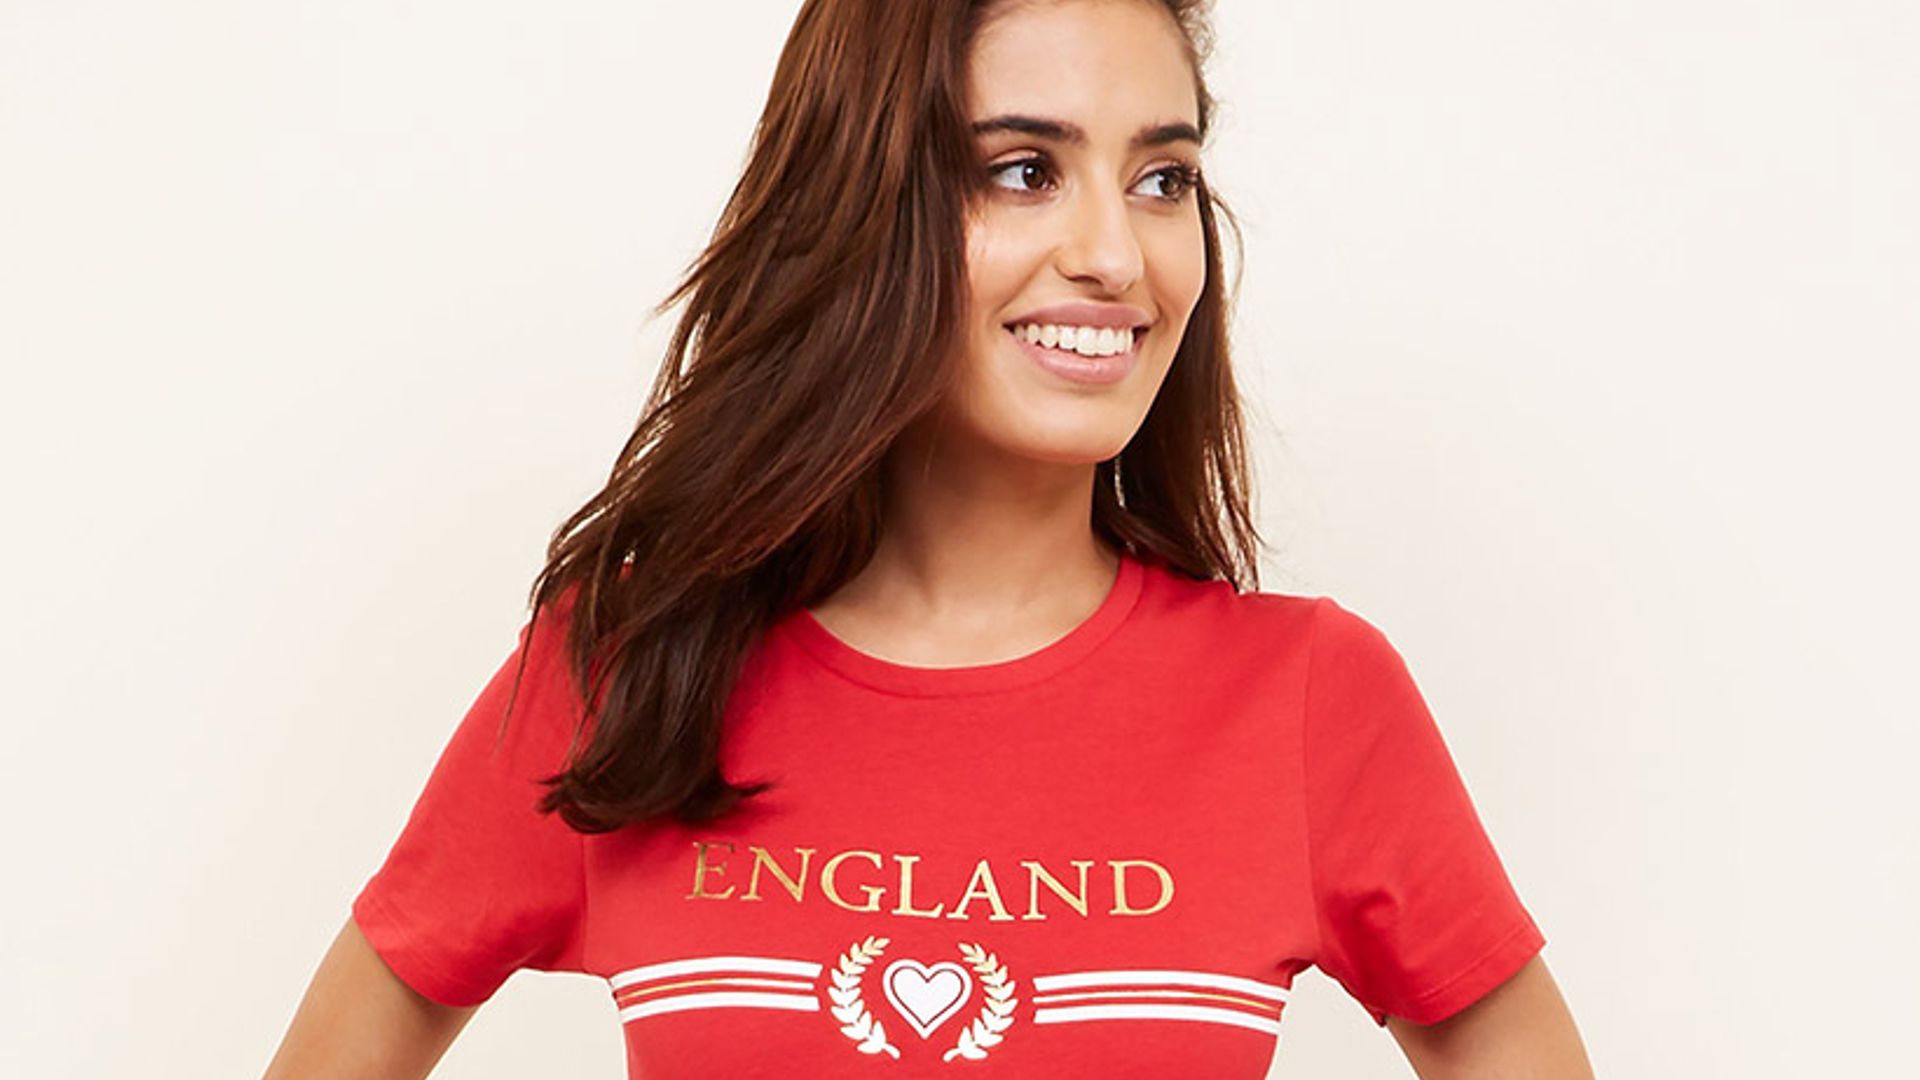 Harry Kane Testa England World Cup 2018 WOMEN'S T-shirt 